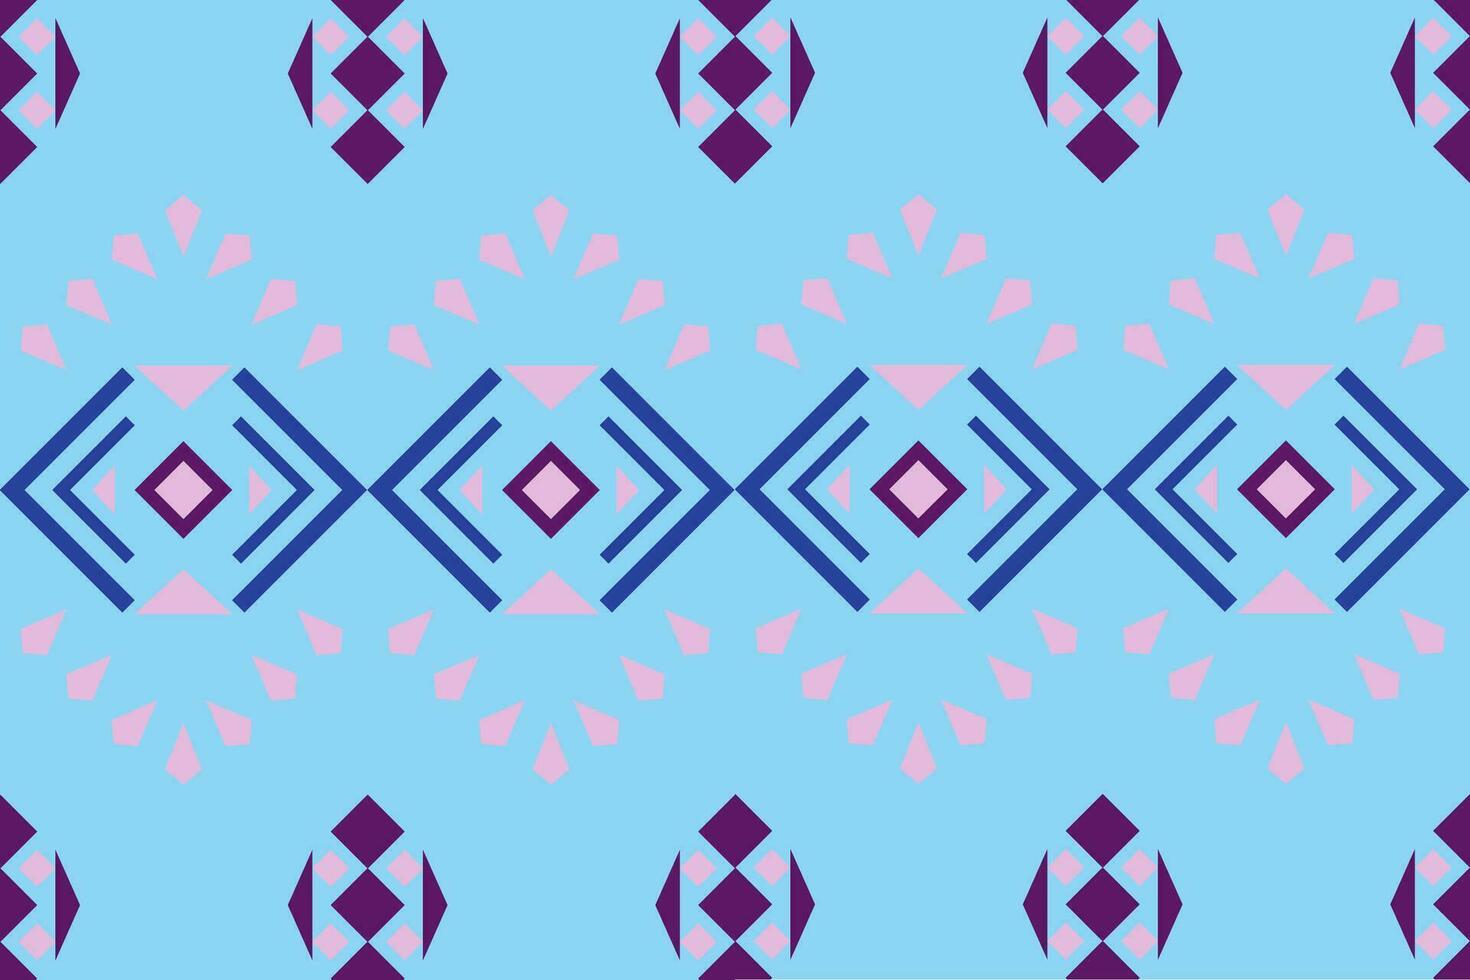 geométrico étnico oriental modelo tradicional diseño para tela,alfombra,ropa,textil,batik.ethnic resumen ikat sin costura modelo en bordado.tribal estilo. vector